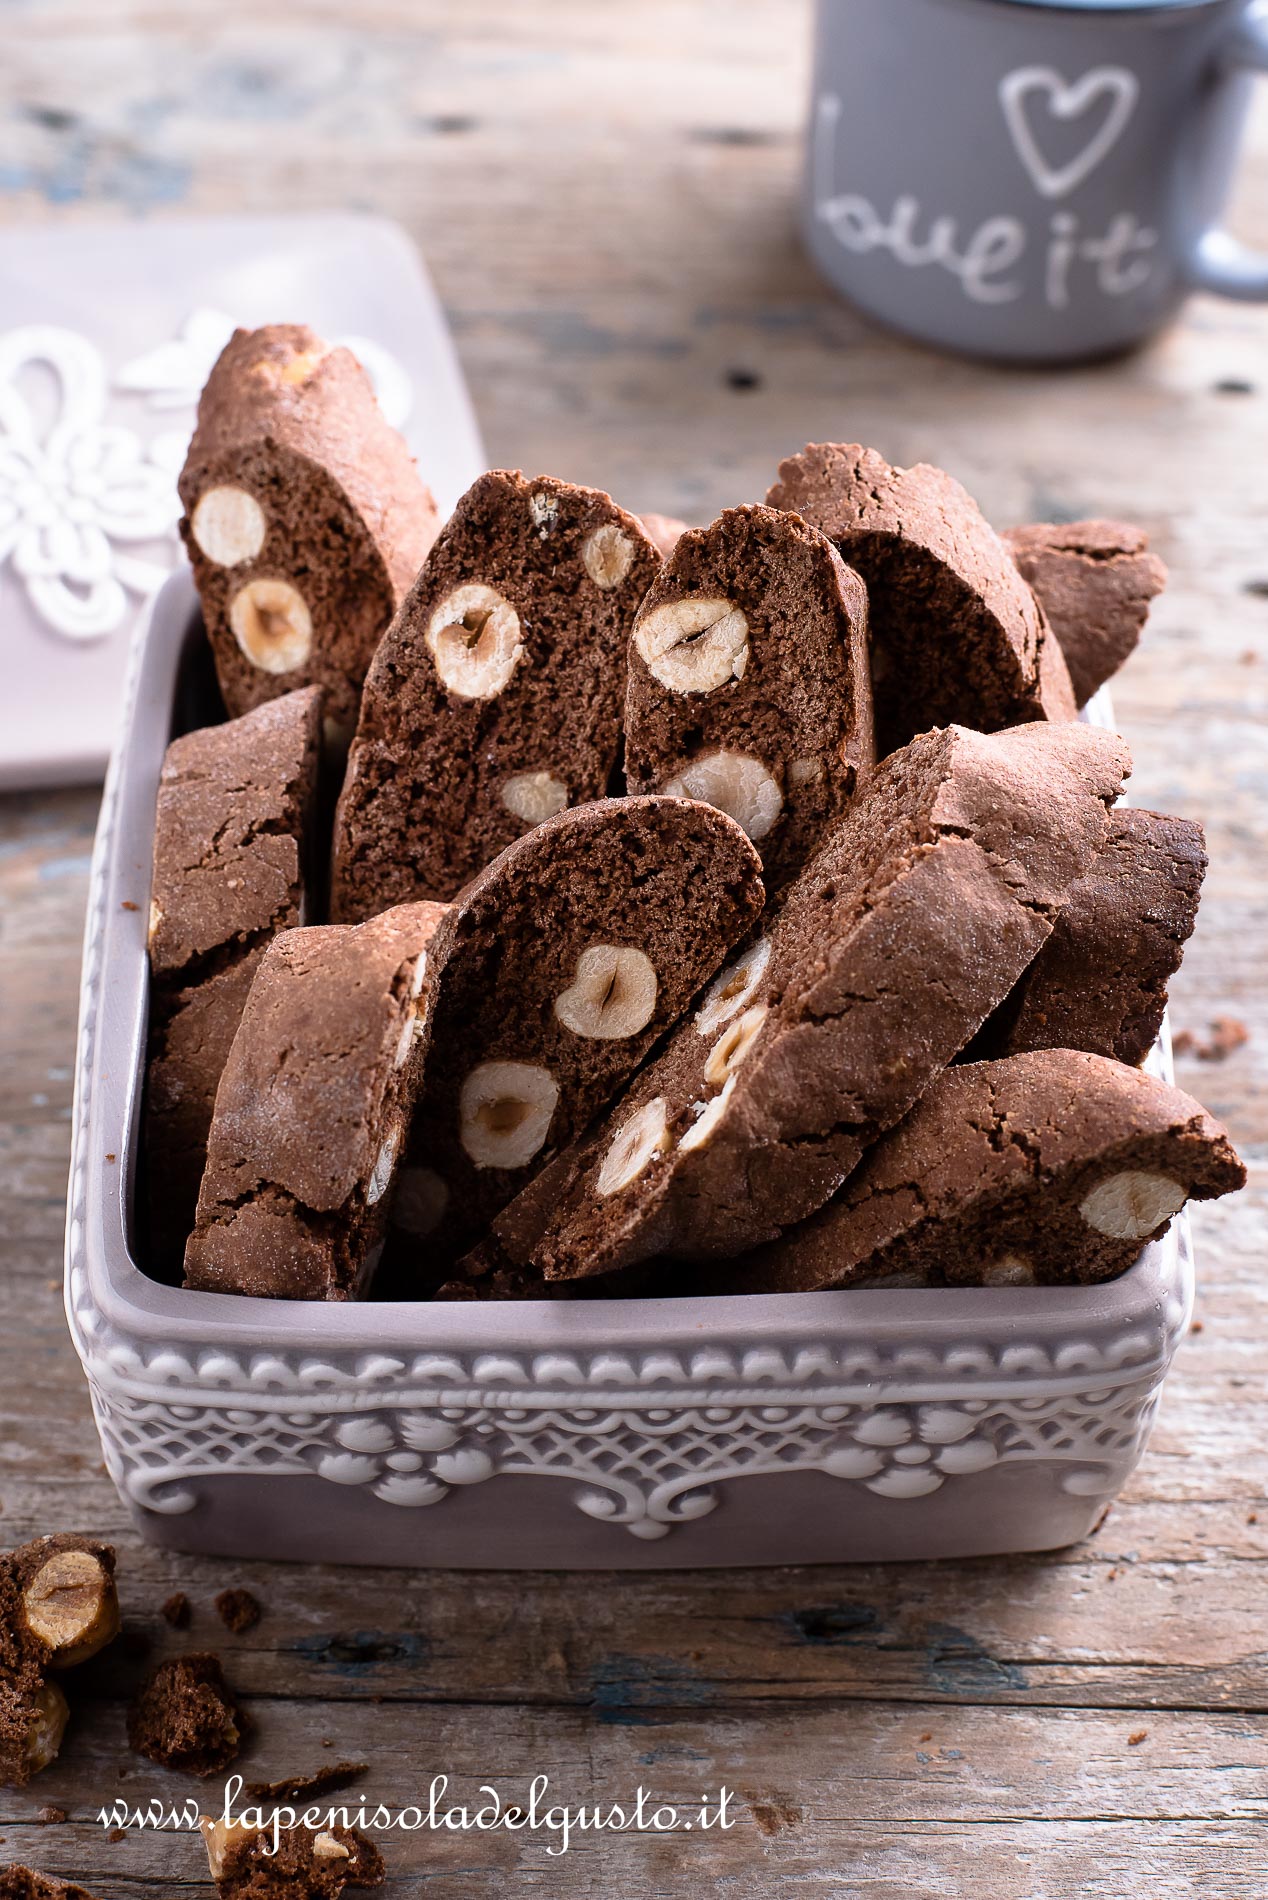 biscotti di natale senza burro al cacao con le nocciole ricetta facile passo a passo dolci da regalare